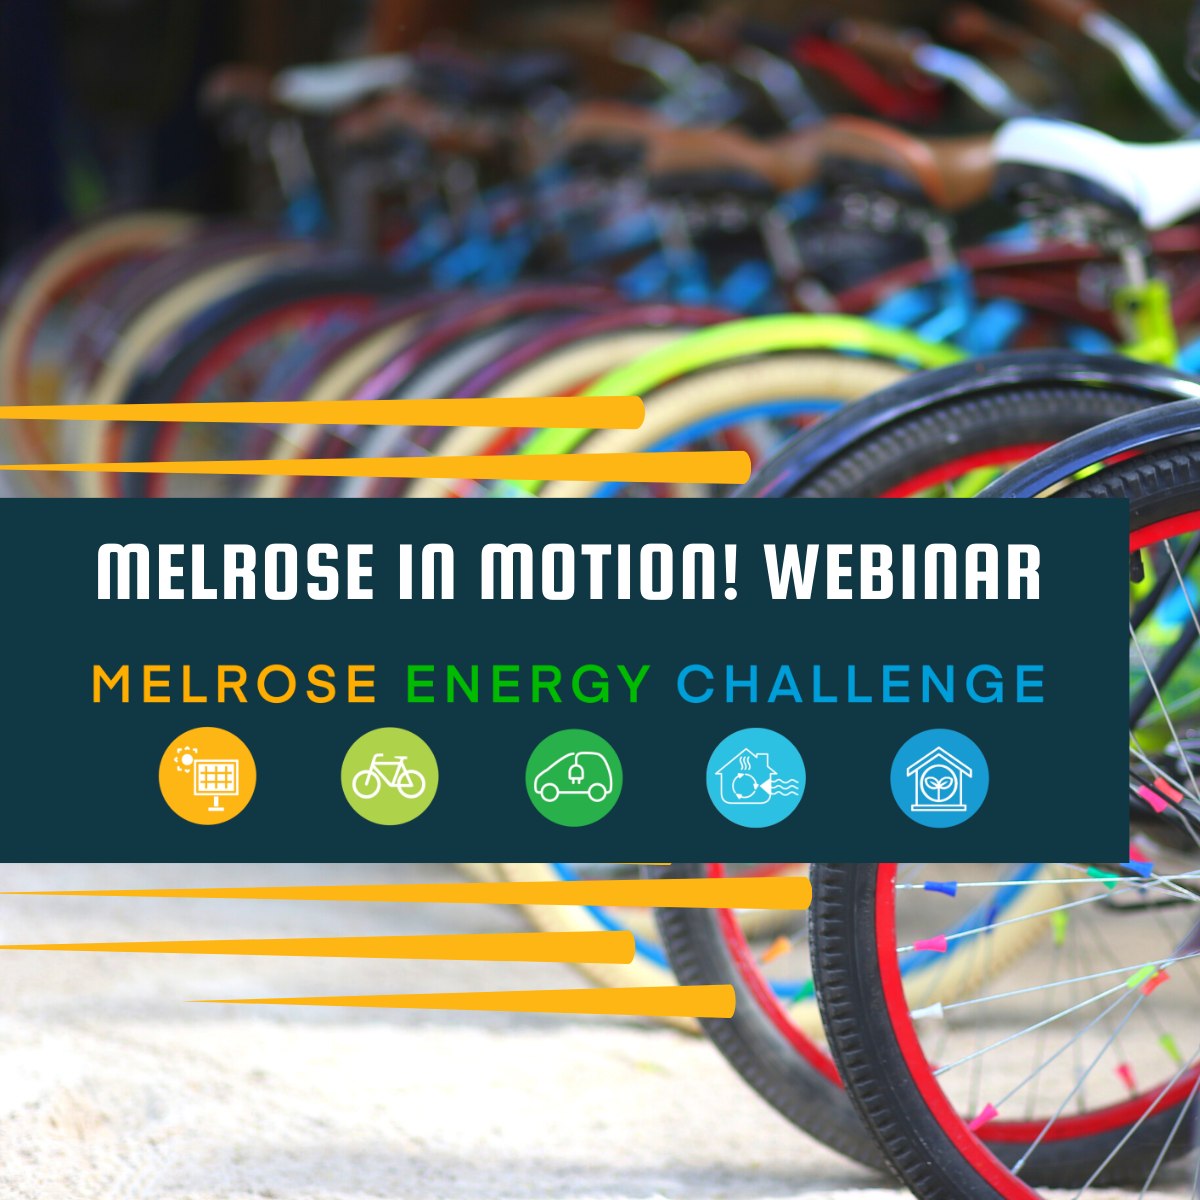 Melrose Energy Challenge: Melrose in Motion Webinar